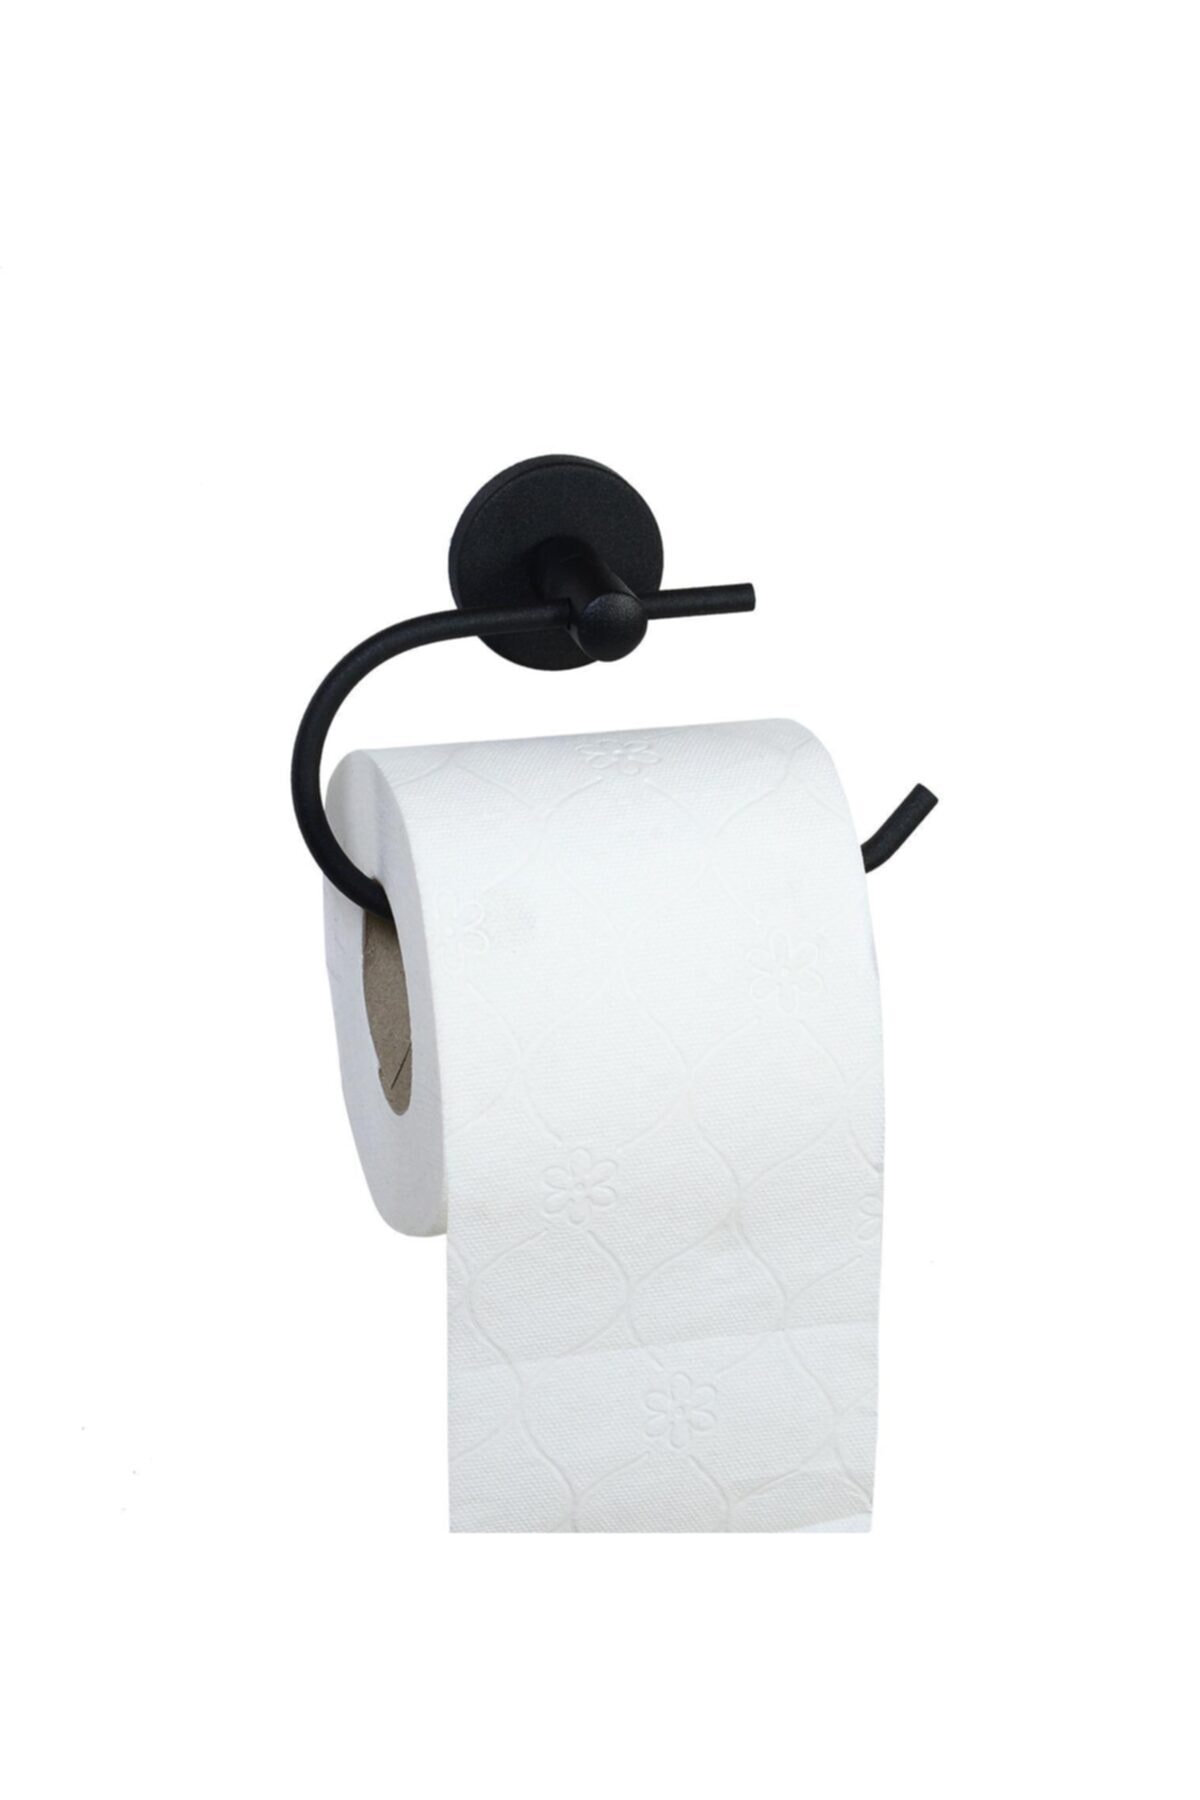 Siyah Wc Kağıtlık Tuvalet Kağıtlığı Tuvalet Kağıdı Askısı Kapaksız Tuvalet Kağıtlık